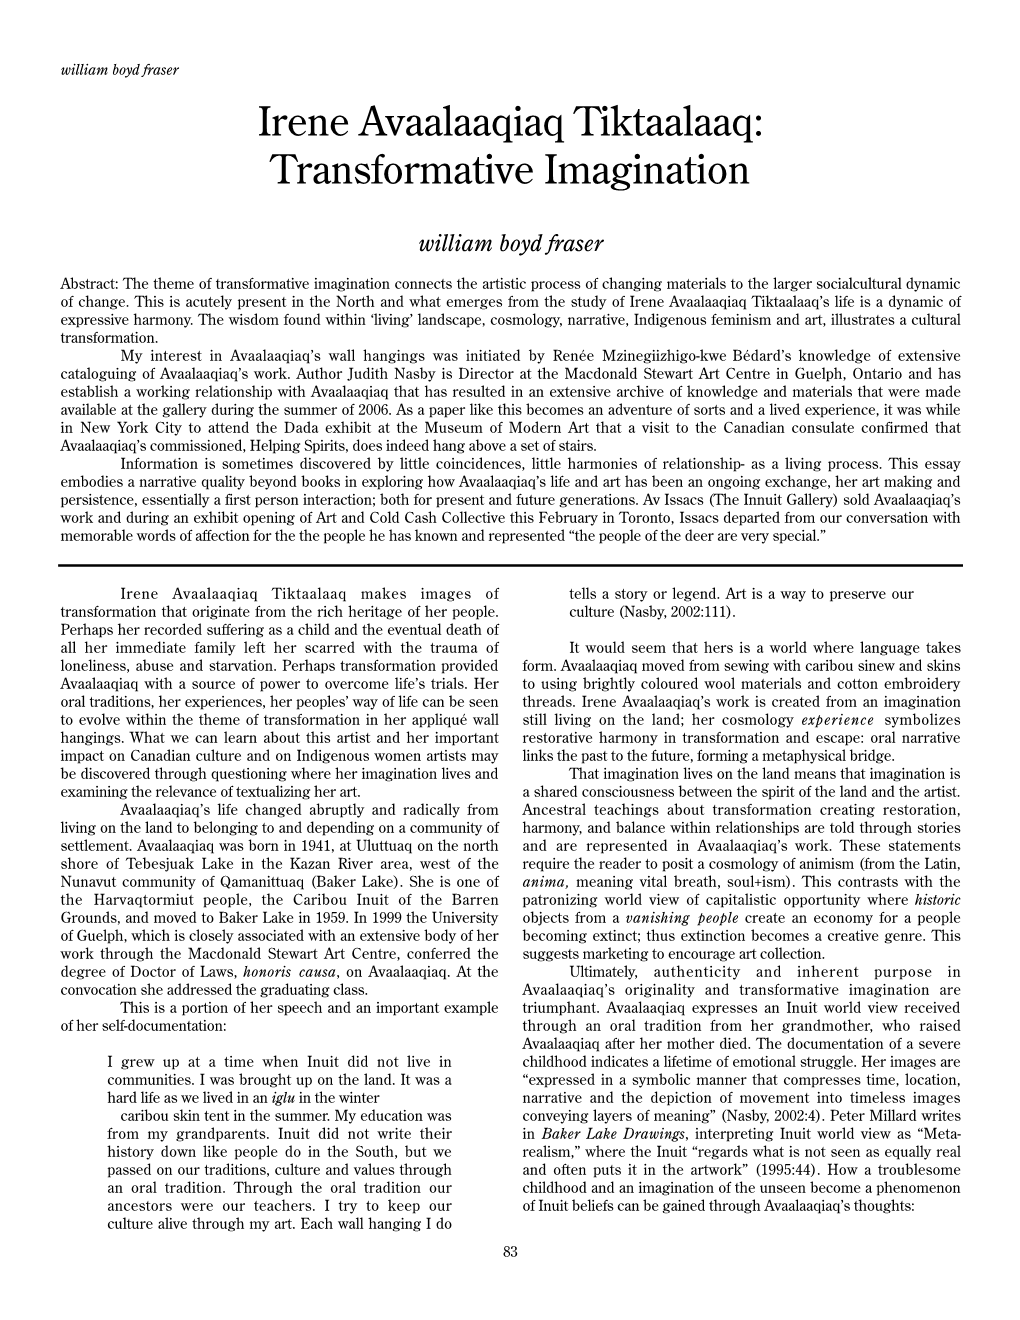 Irene Avaalaaqiaq Tiktaalaaq: Transformative Imagination